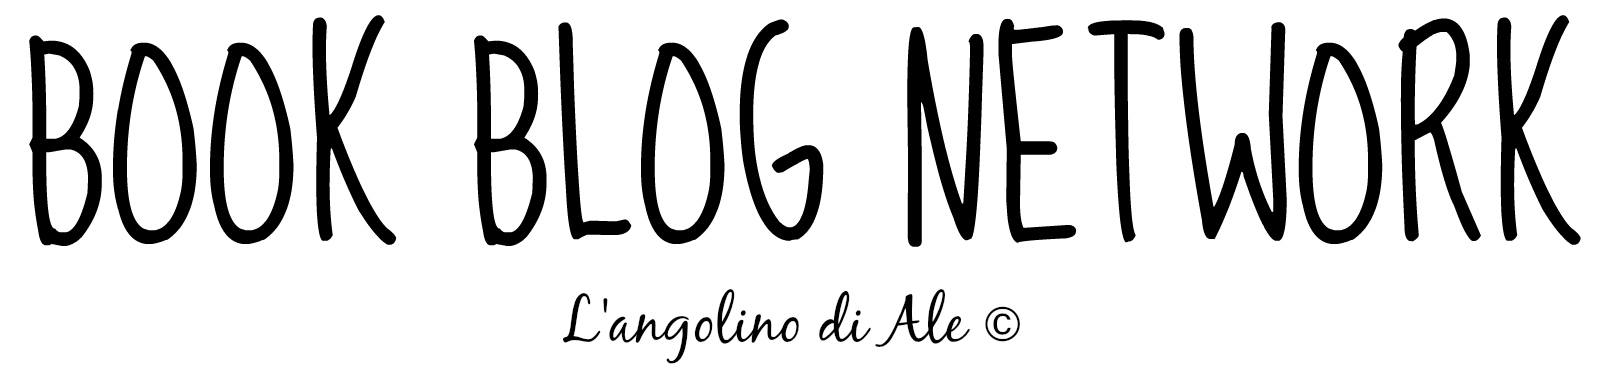 Book Blog Network - L'angolino di Ale